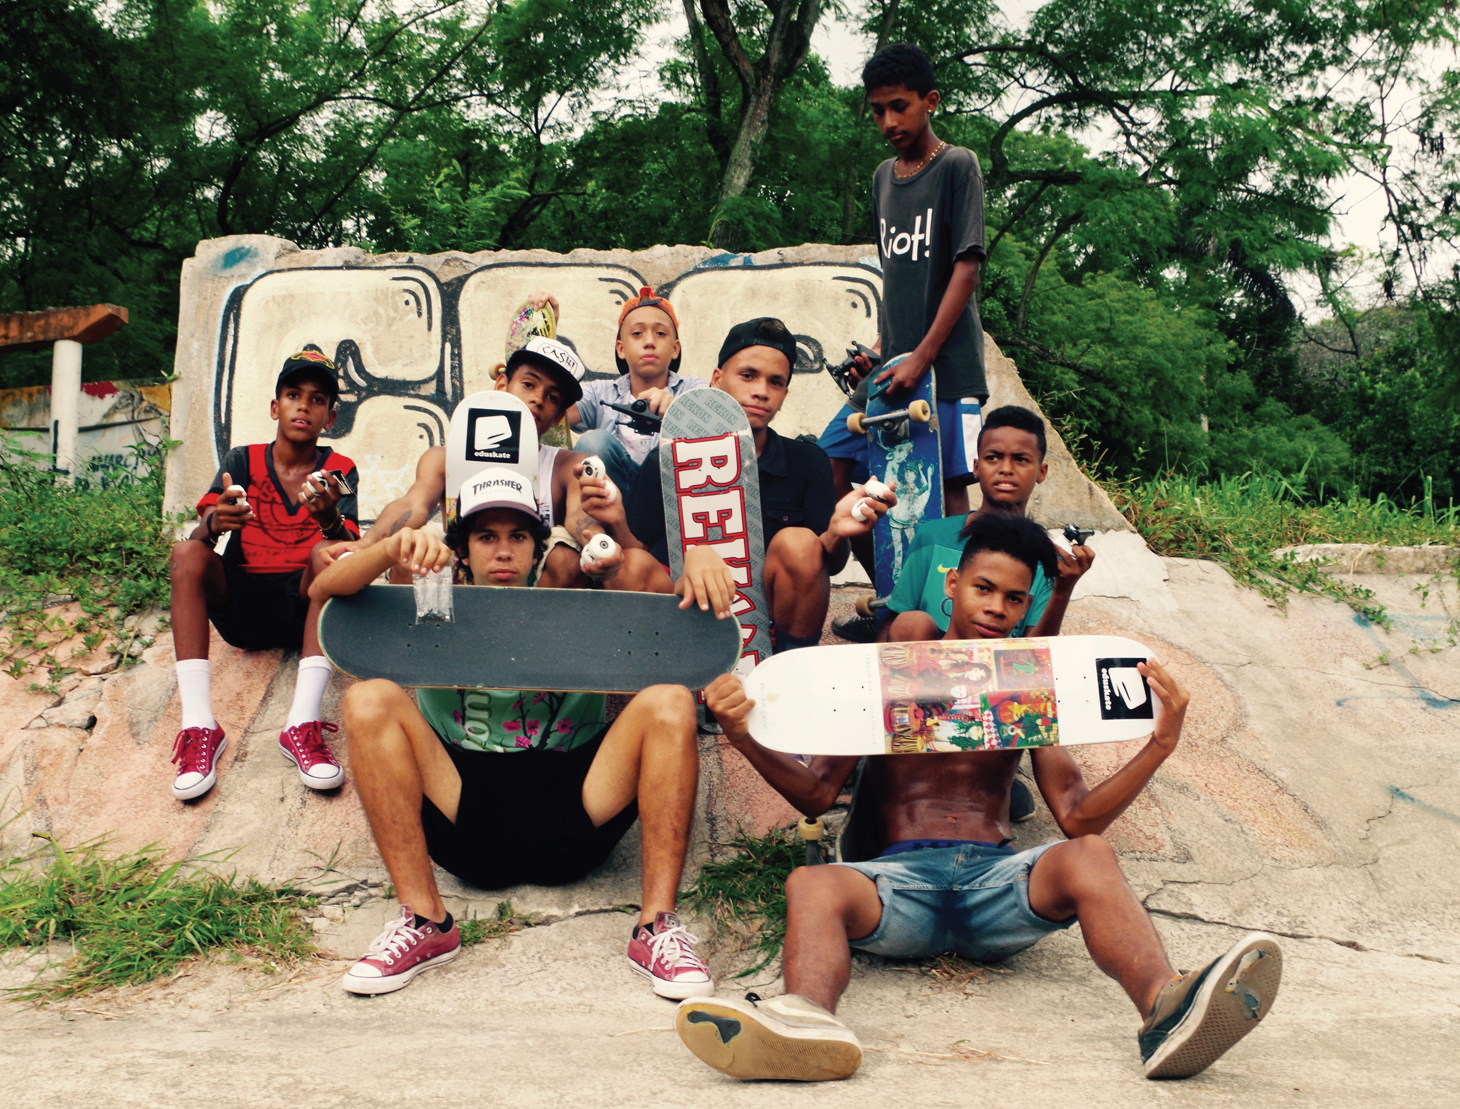 Skateboarders in Cuba